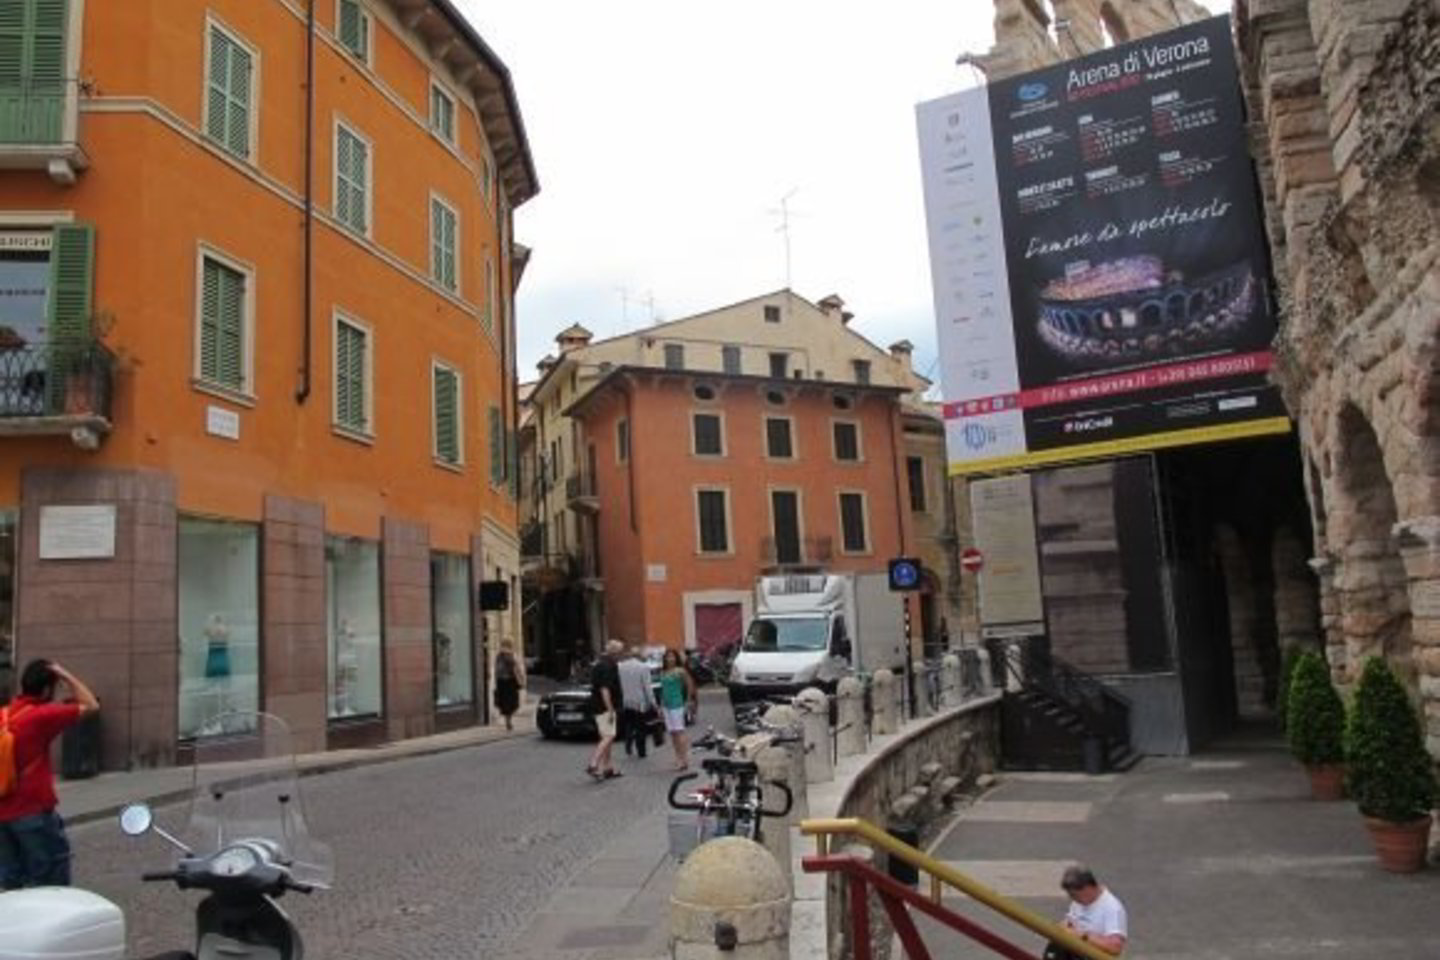 Verona – tiesiog romantiška atmosfera spindintis miestas.<br>flyout.lt